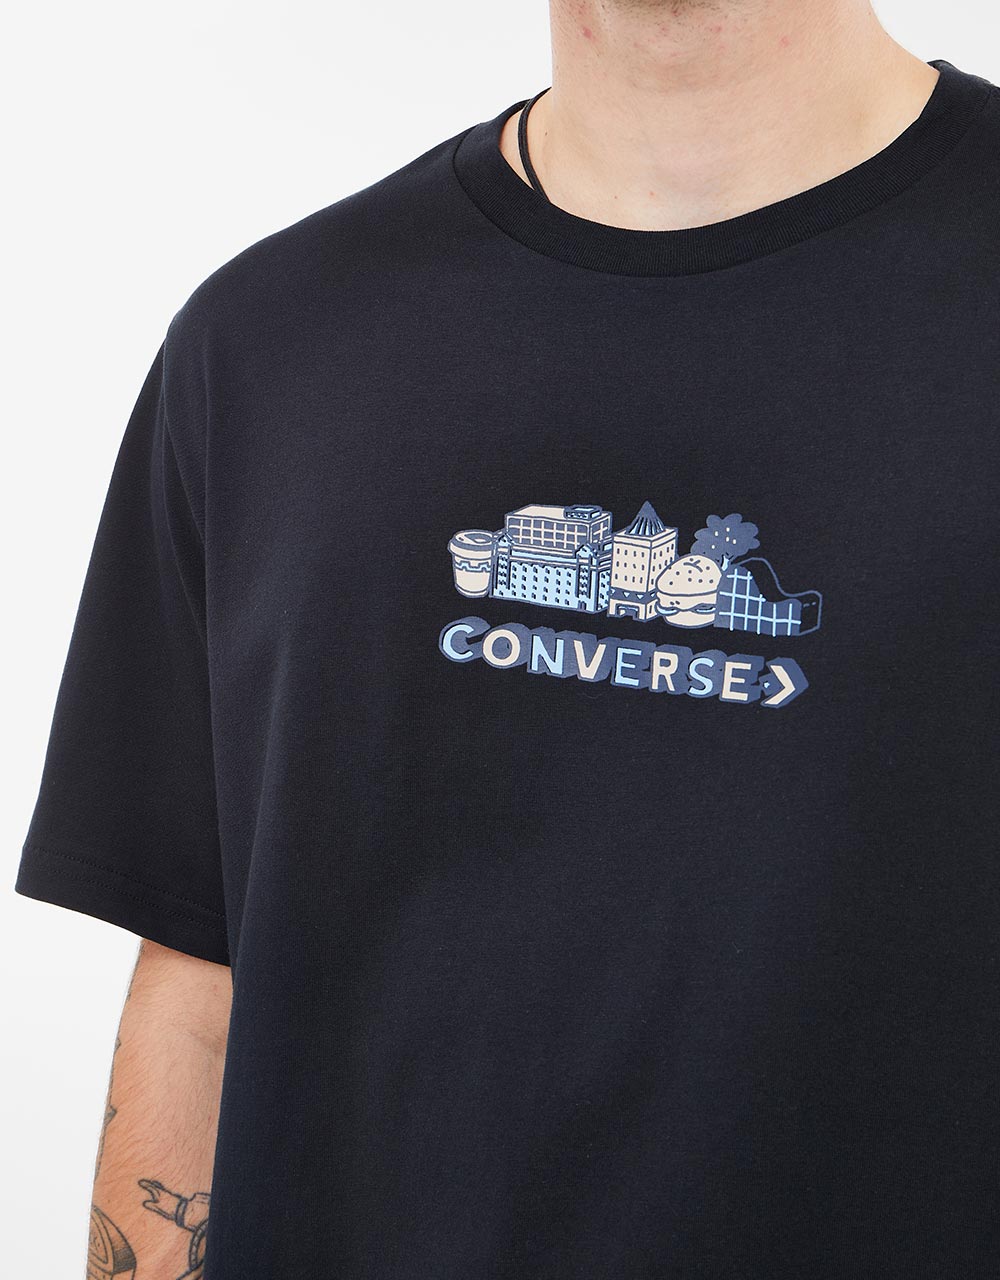 Converse City Tour T-Shirt - Converse Black